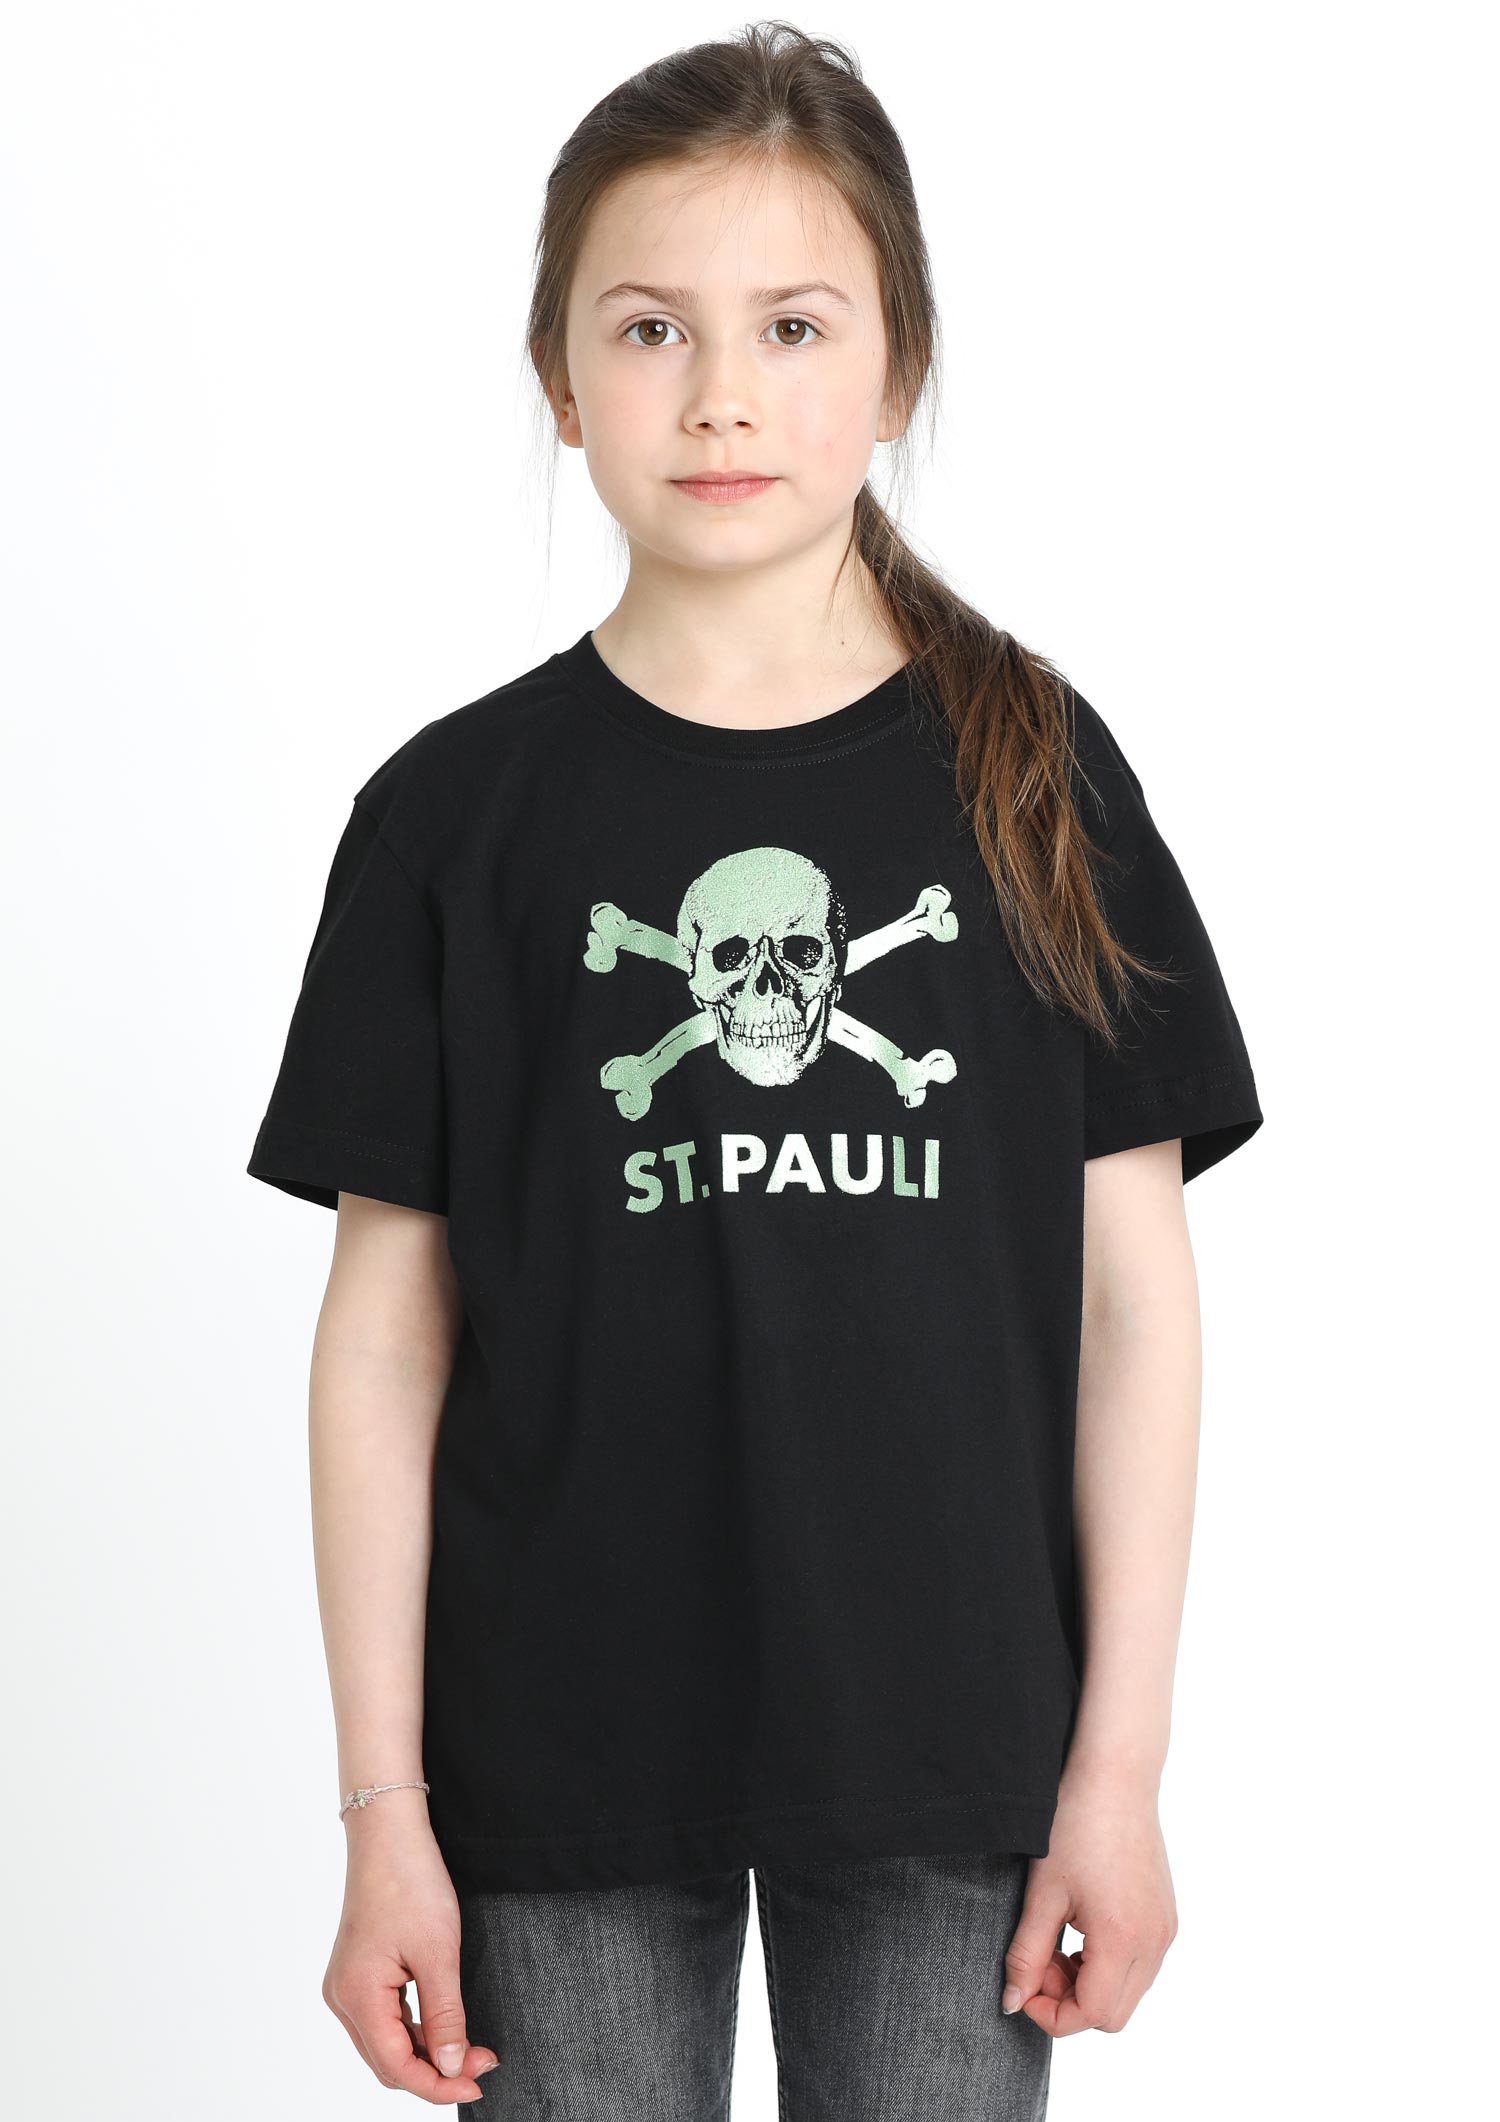 Kinder T-Shirt Glitzer schwarz-grün